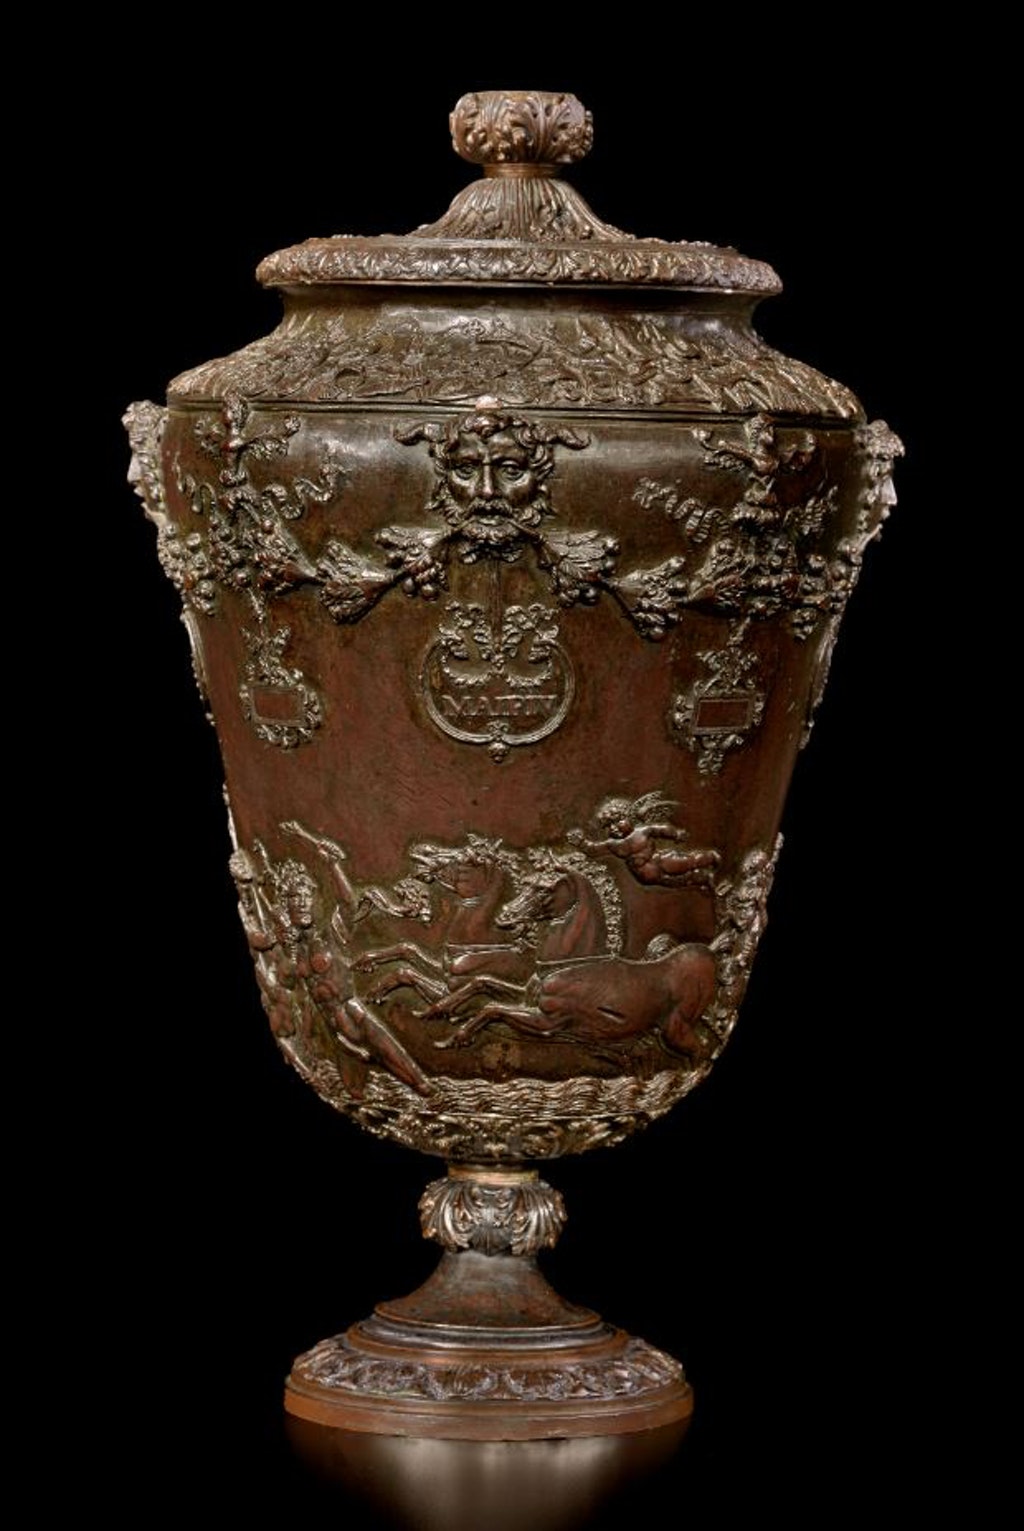 Vaso Gonzaga, Vaso di bronzo a forma di calice (scultura, opera isolata) di Alari Bonacolsi Pier Jacopo detto Antico (attribuito) - ambito mantovano (ultimo quarto XV)